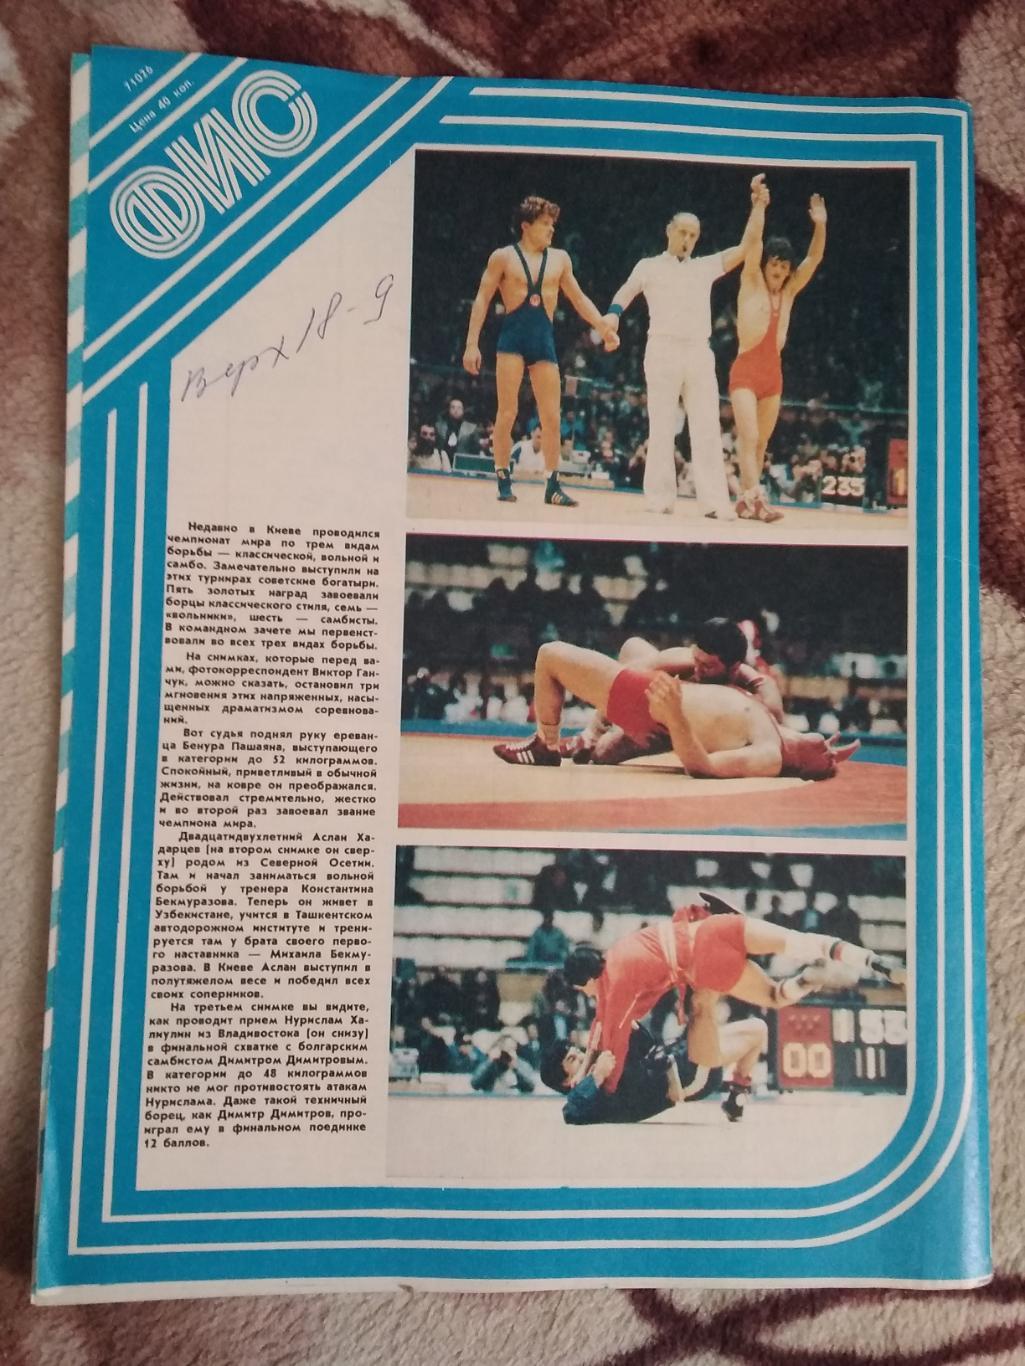 Журнал.Физкультура и спорт № 12 1983 г. (ФиС). 2